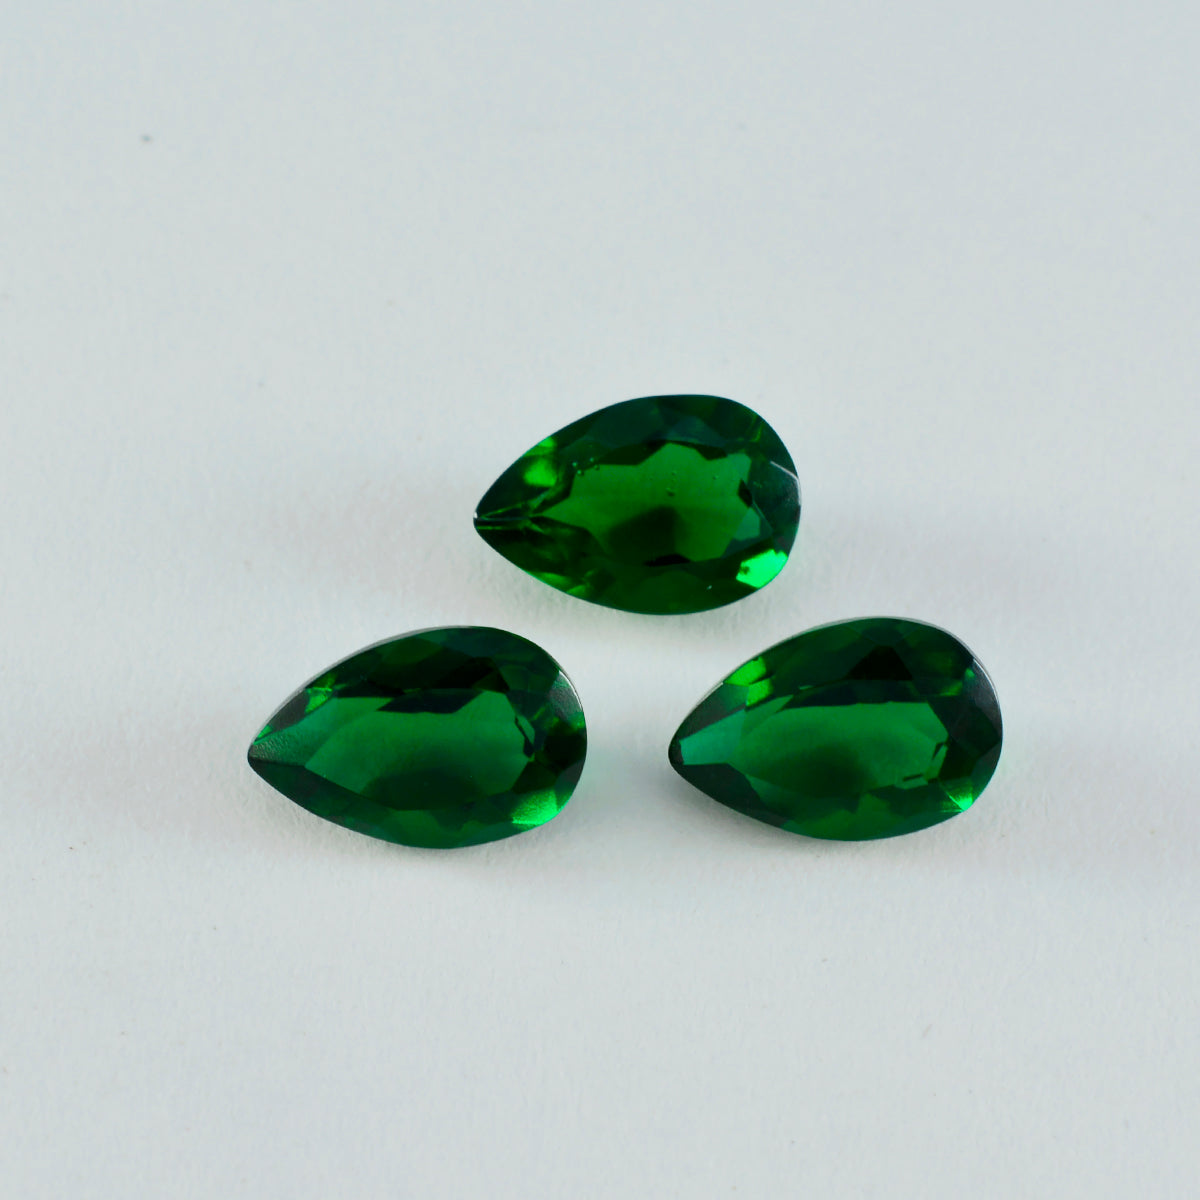 riyogems 1 шт. зеленый изумруд граненый cz 8x12 мм драгоценный камень грушевидной формы прекрасного качества